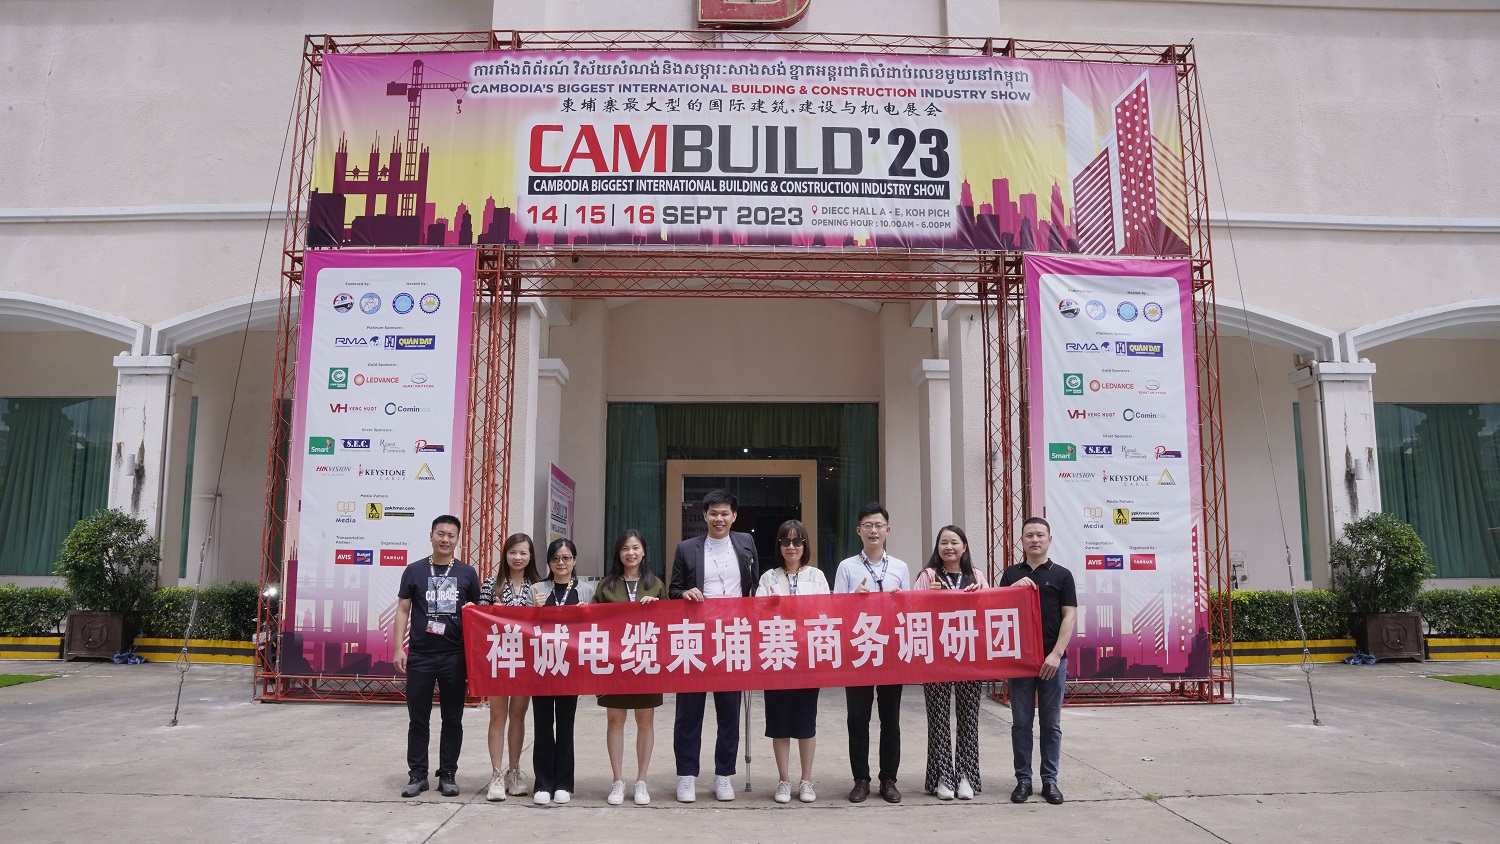 粤佳信公司亮相柬埔寨国际建筑建材展览会——CAMBUILD 2023！